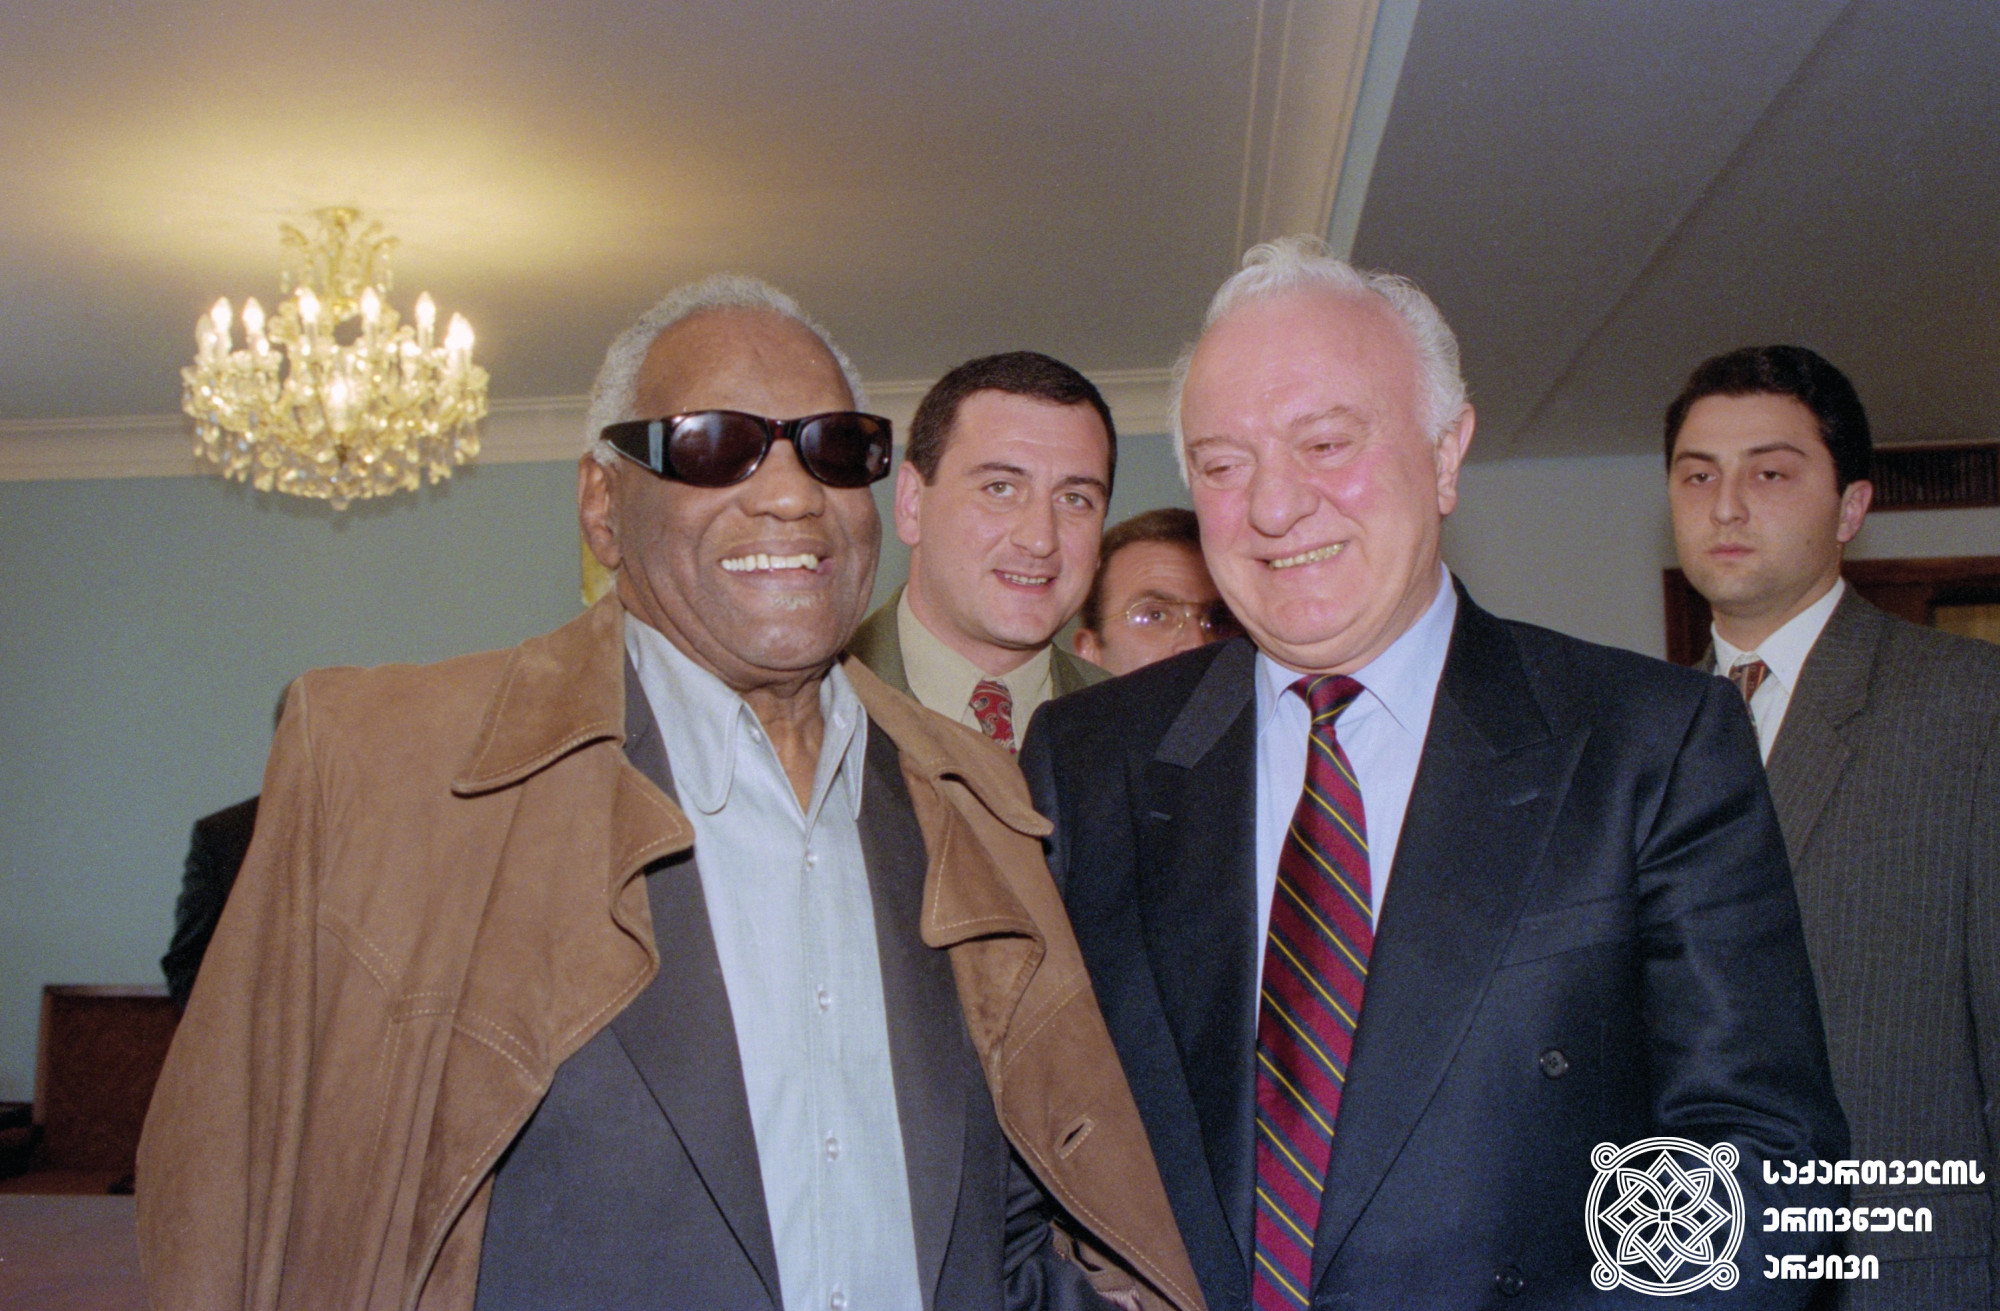 ამერიკელი მუსიკოსი რეი ჩარლზი მიღებაზე საქართველოს პრეზიდენტ ედუარდ შევარდნაძესთან. <br>
თბილისი. 1996 წელი. <br>
სერგო ედიშერაშვილის ფოტო. <br>
American musician Ray Charles at a reception with the President Eduard Shevardnadze. <br> Tbilisi. 1996. <br>
Photo by Sergo Edisherashvili.